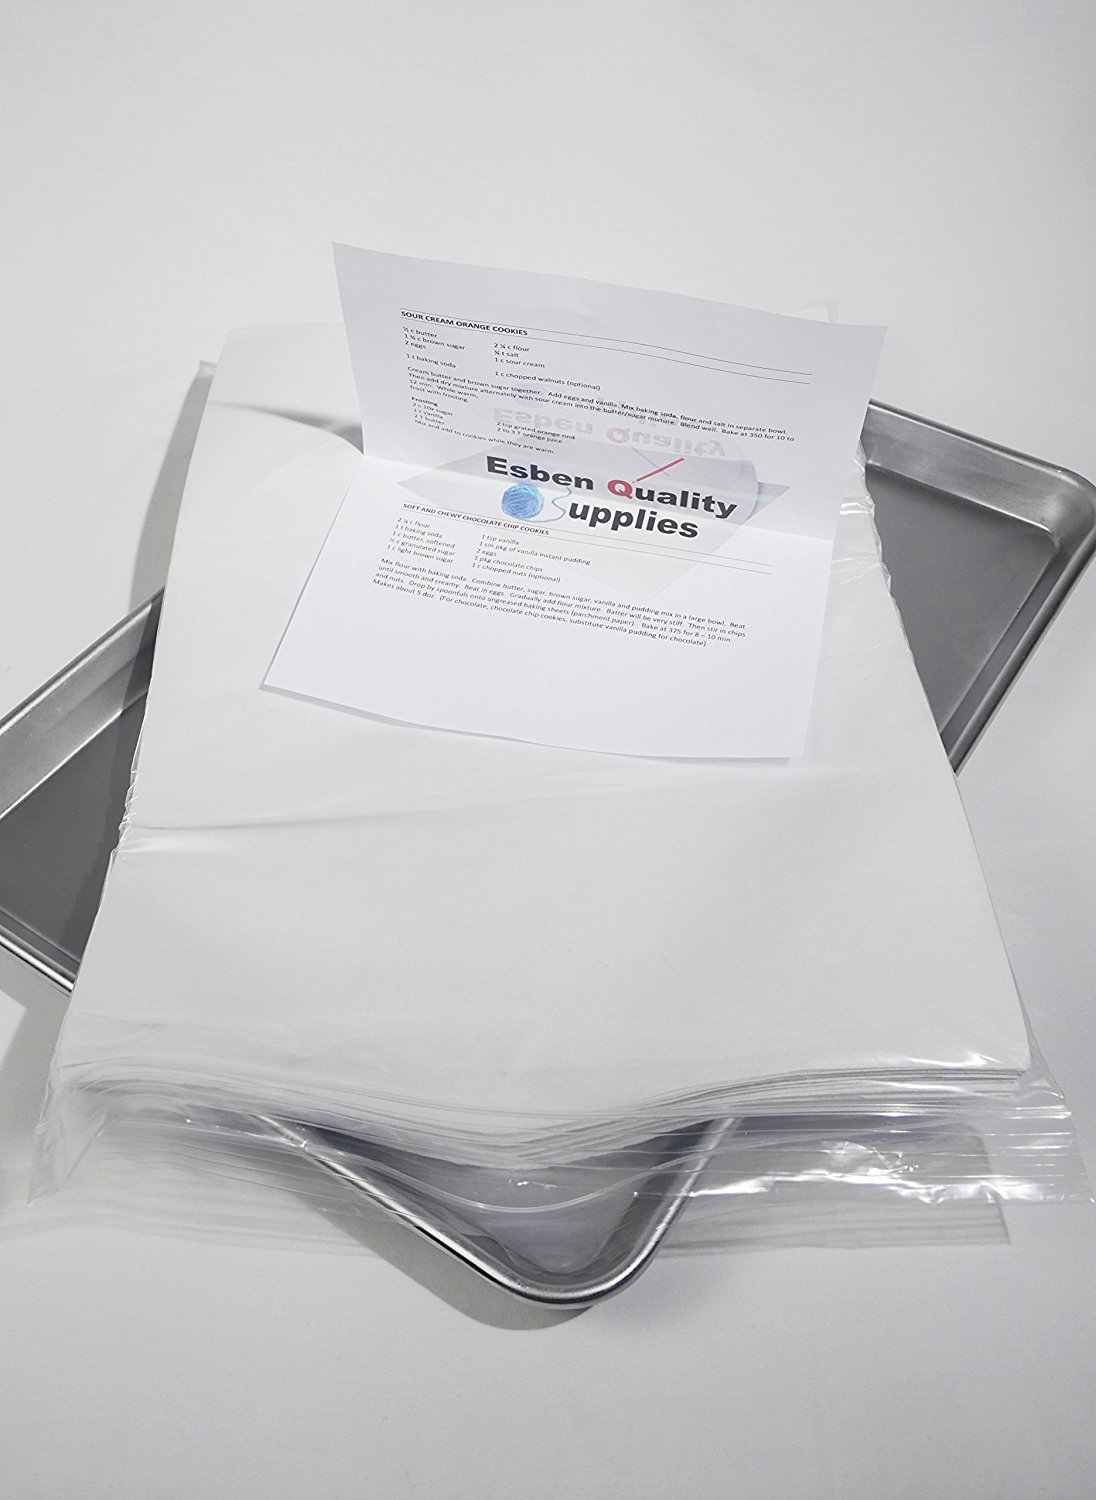 Premium Quilon Parchment Sheets (white), 12x16 baking sheet pan liners ...